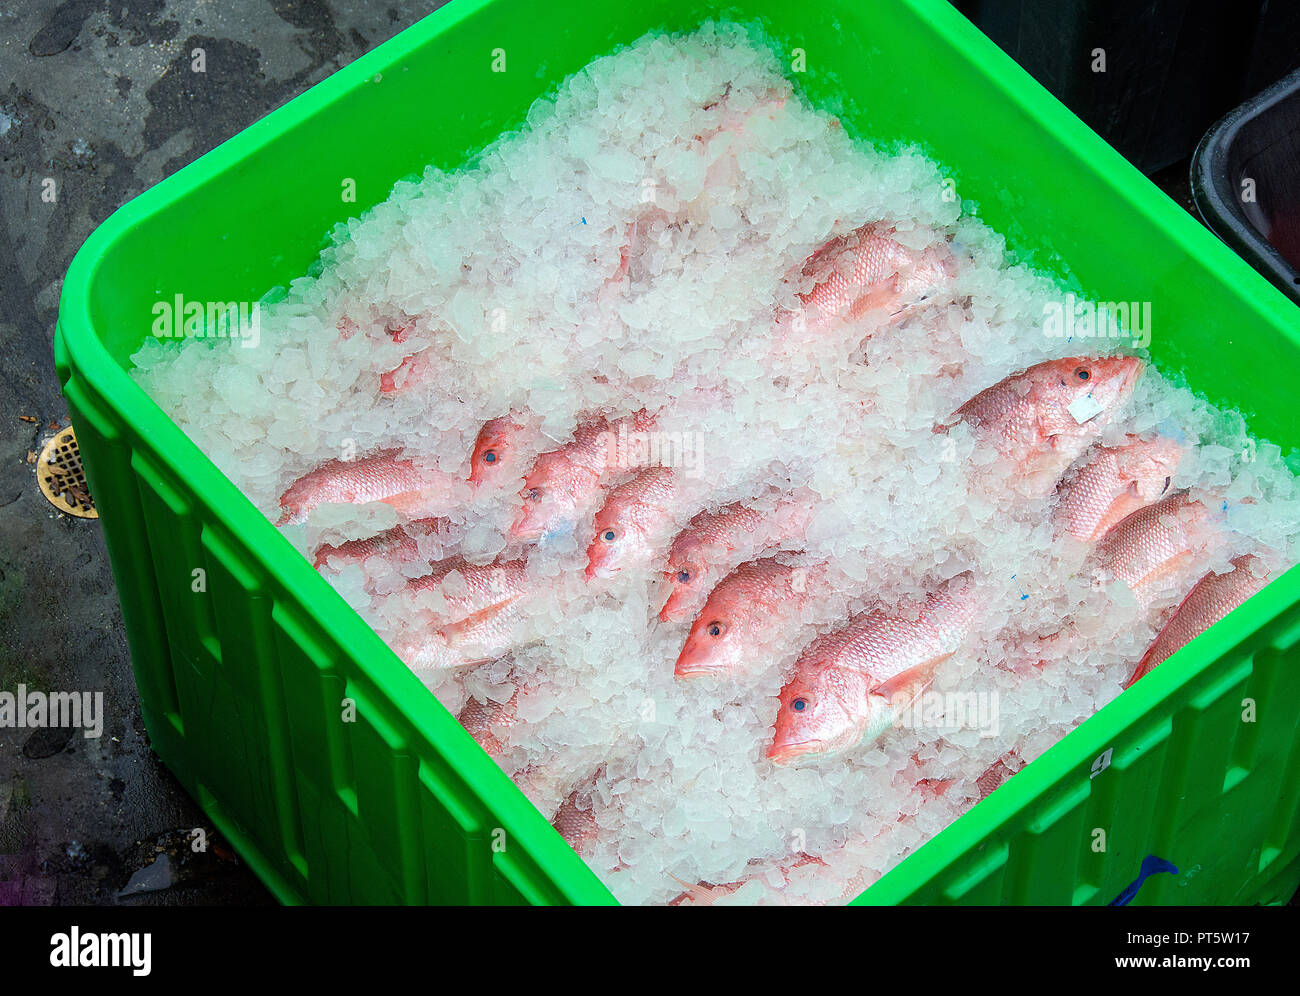 Frische Florida red snapper Fisch in Eis in hellem Grün Kunststoff Box verpackt Stockfoto